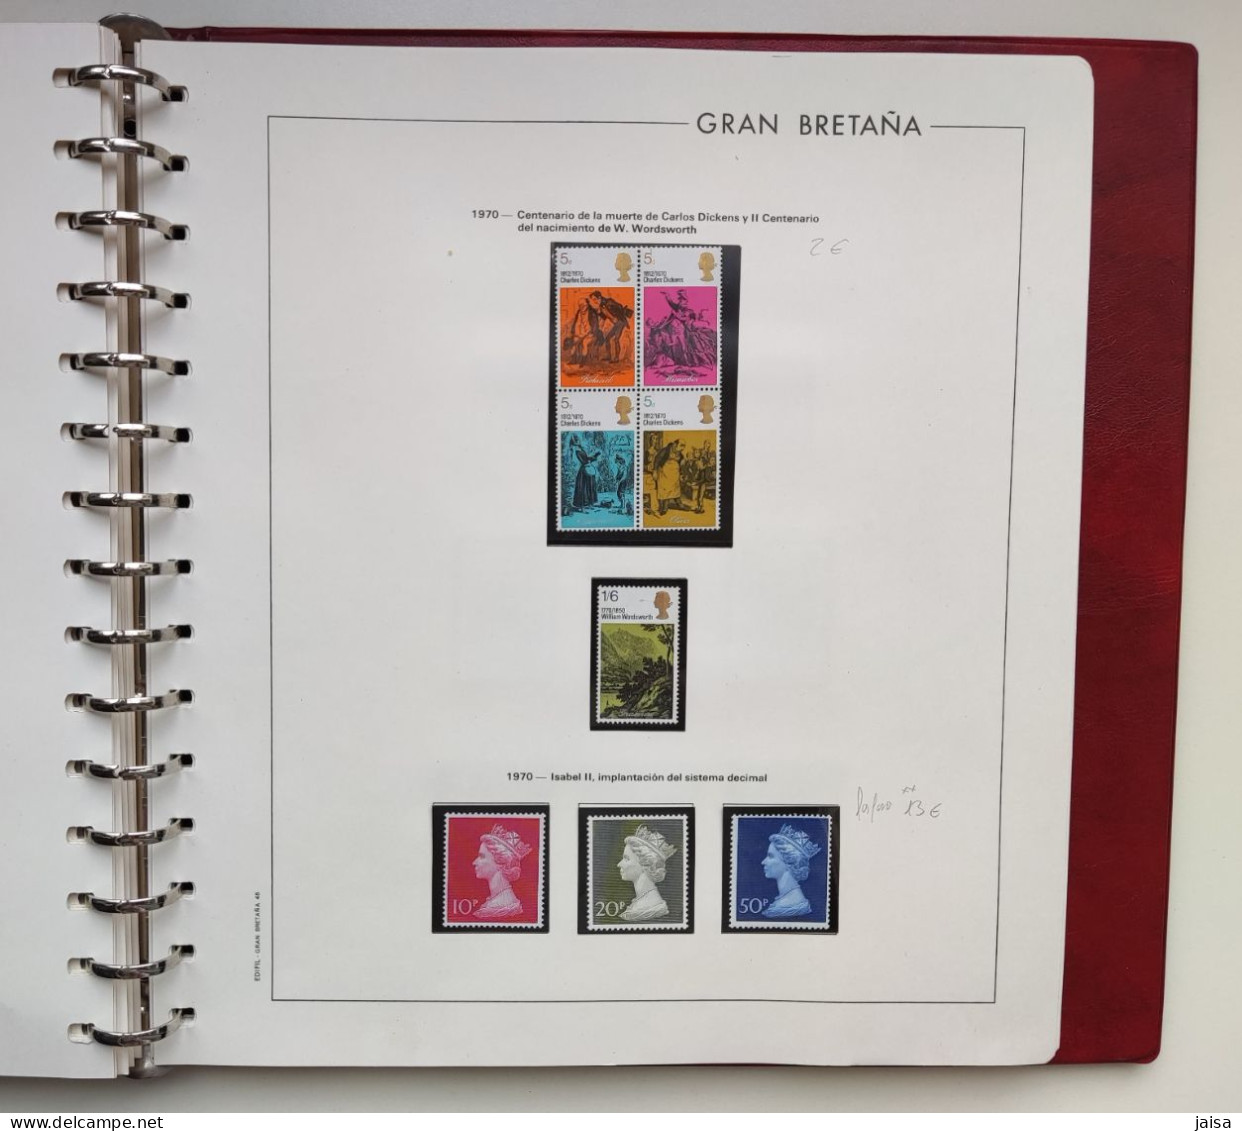 GRAN BRETAÑA. Años 1840 - 1975.Album,hojas y sellos.